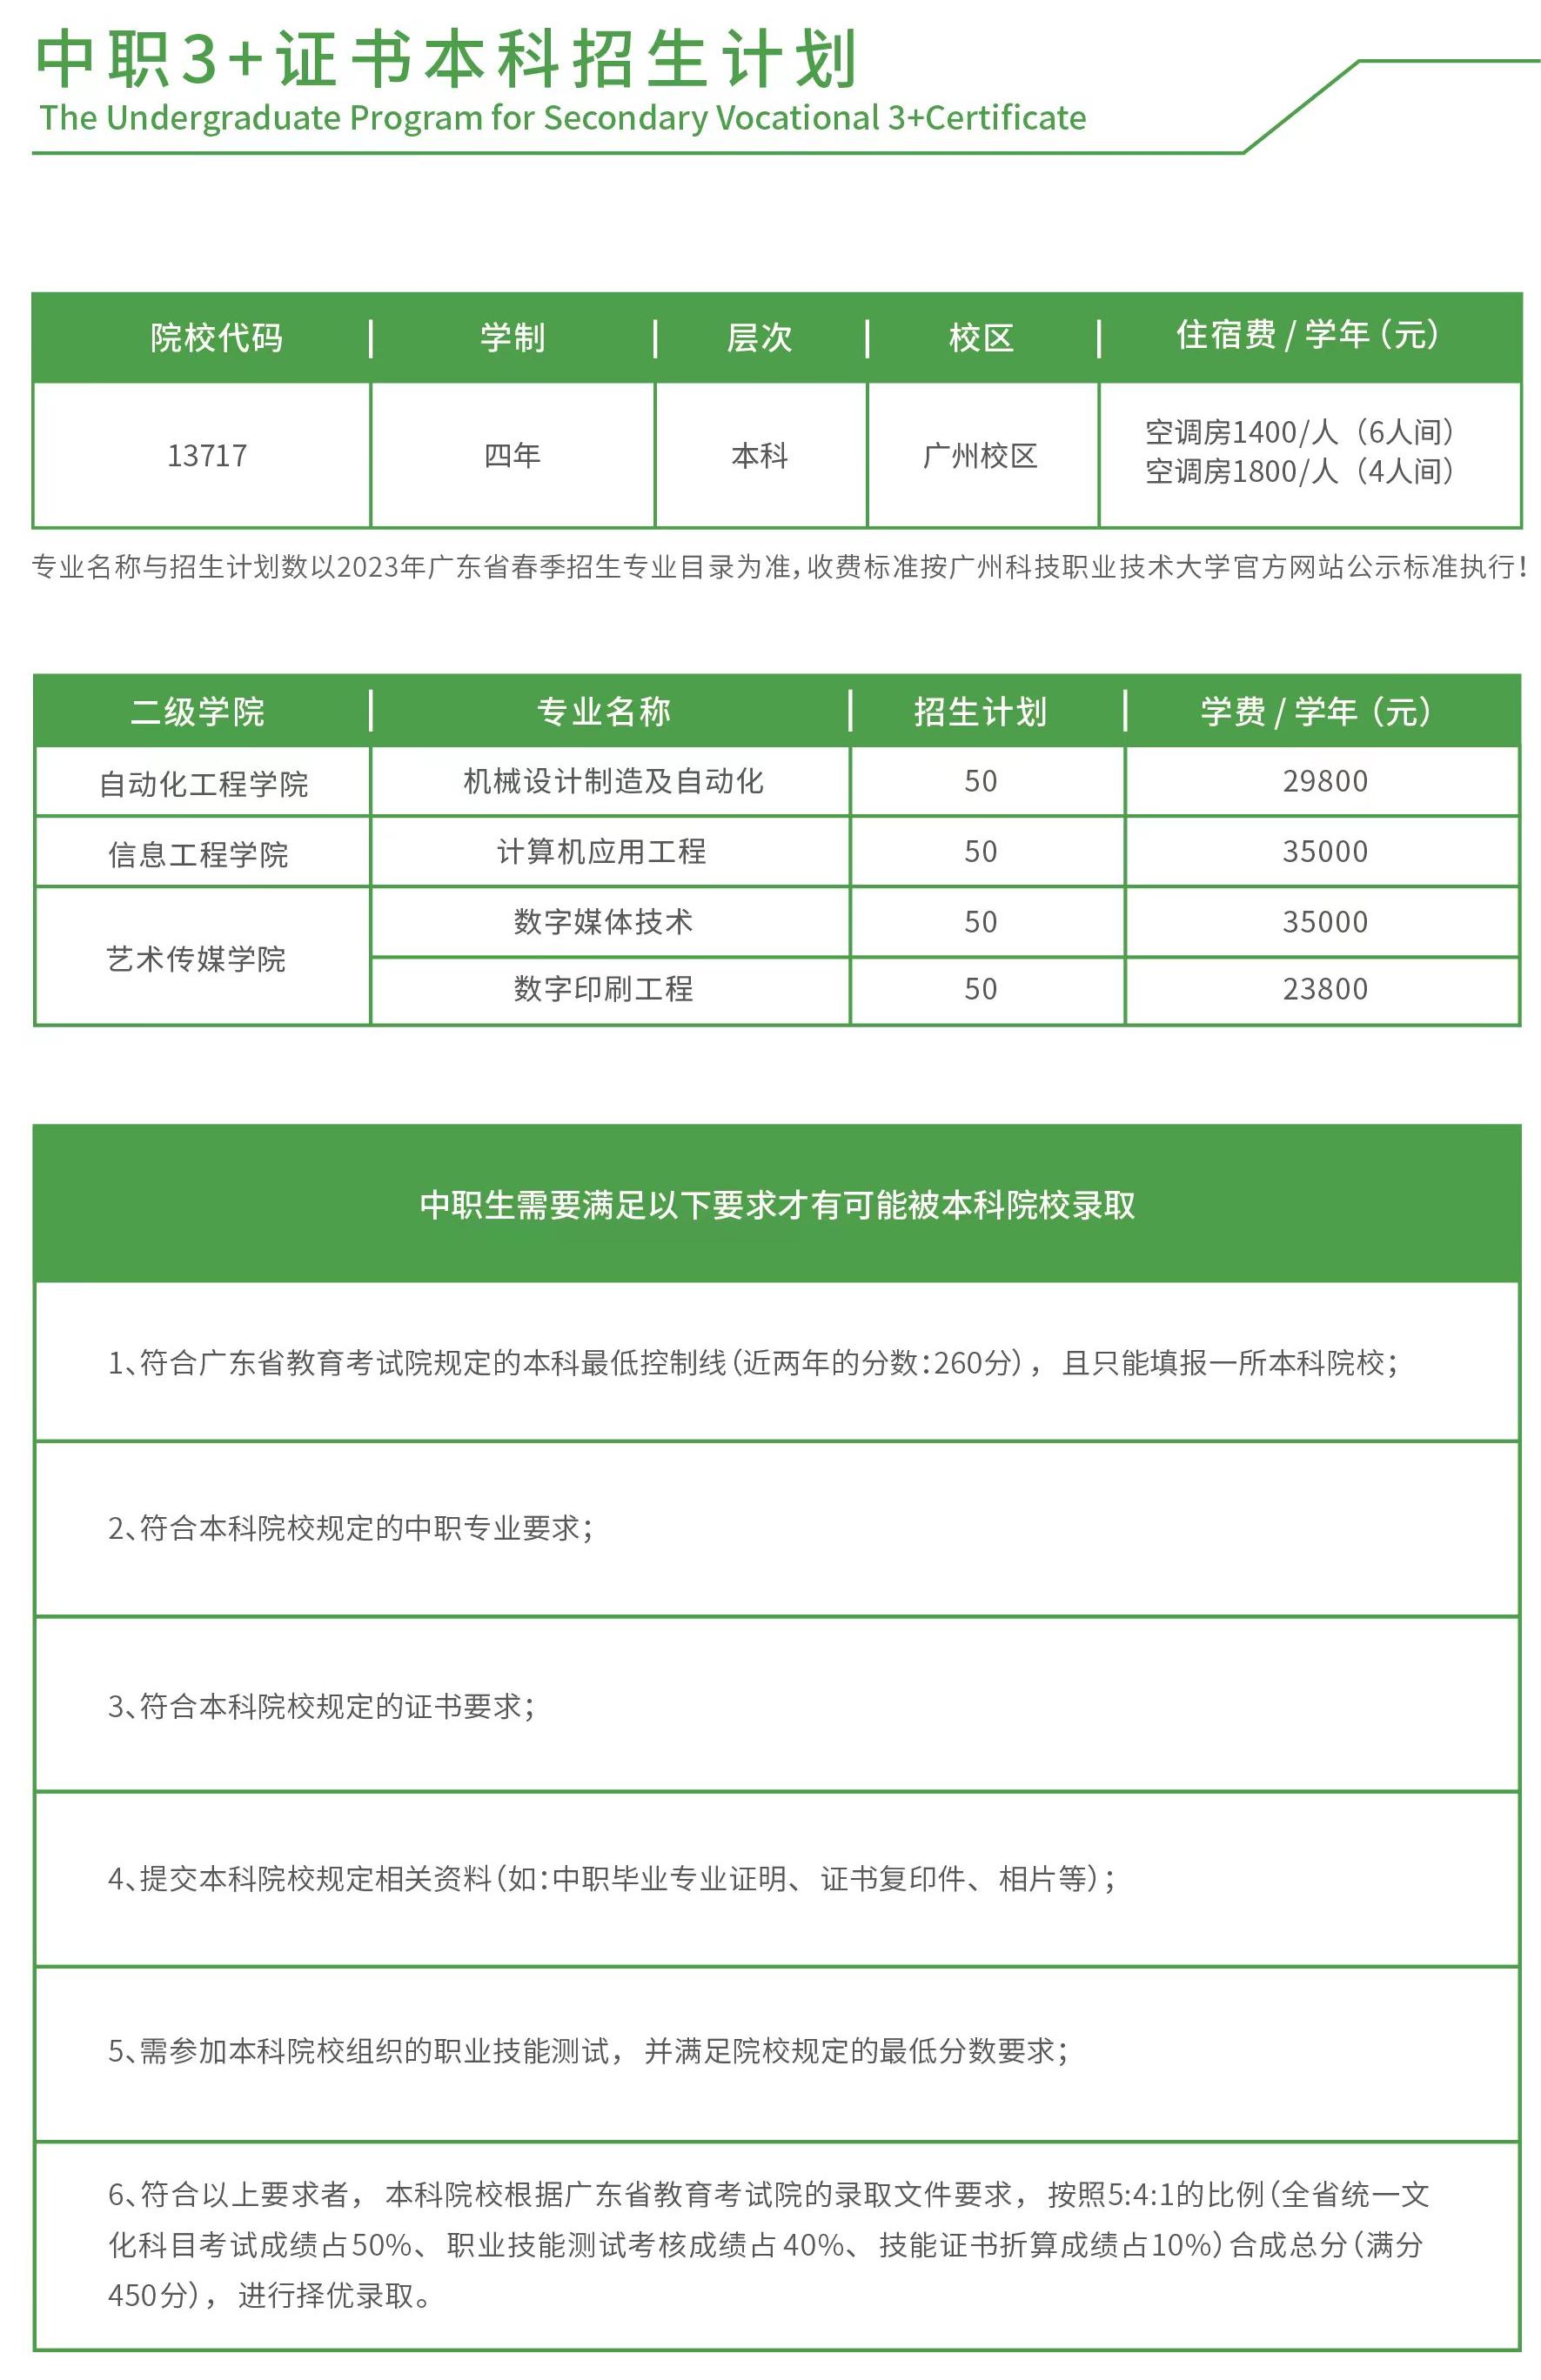 广州科技职业技术大学－2023年中职3+证书本科招生计划